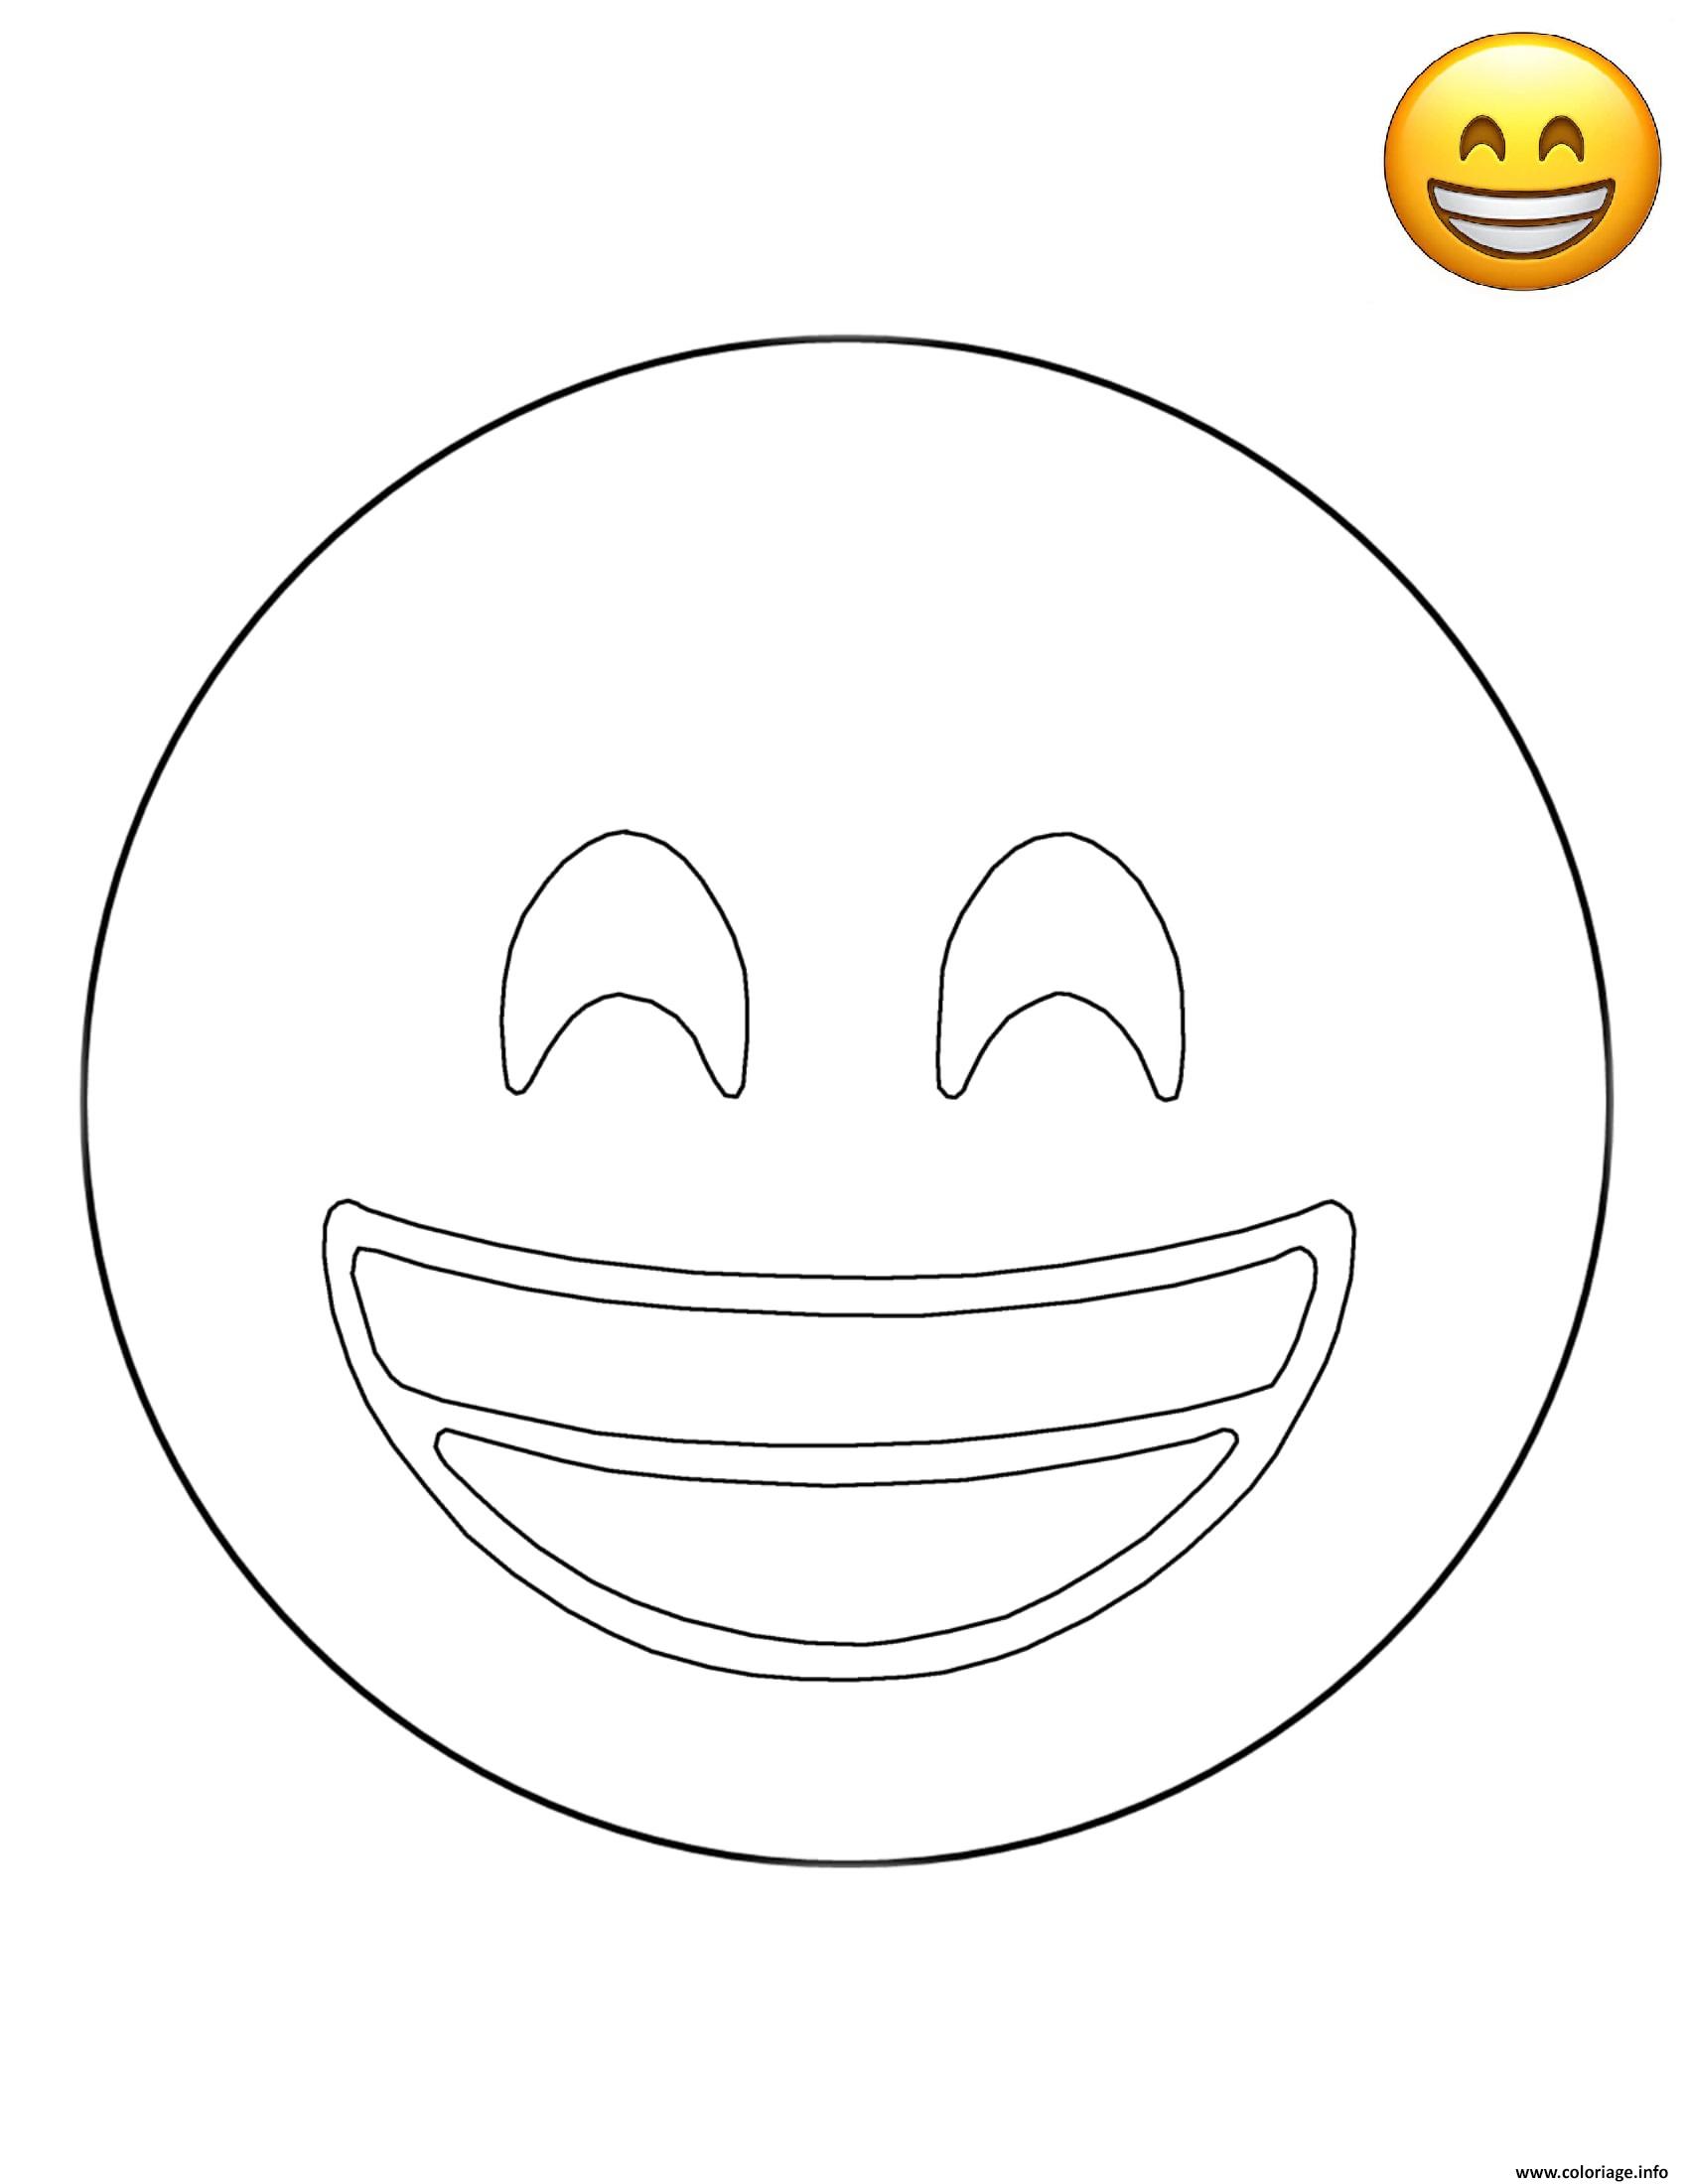 Coloriage Emoji Grinning Smile Smiley Dessin Emoji Imprimer